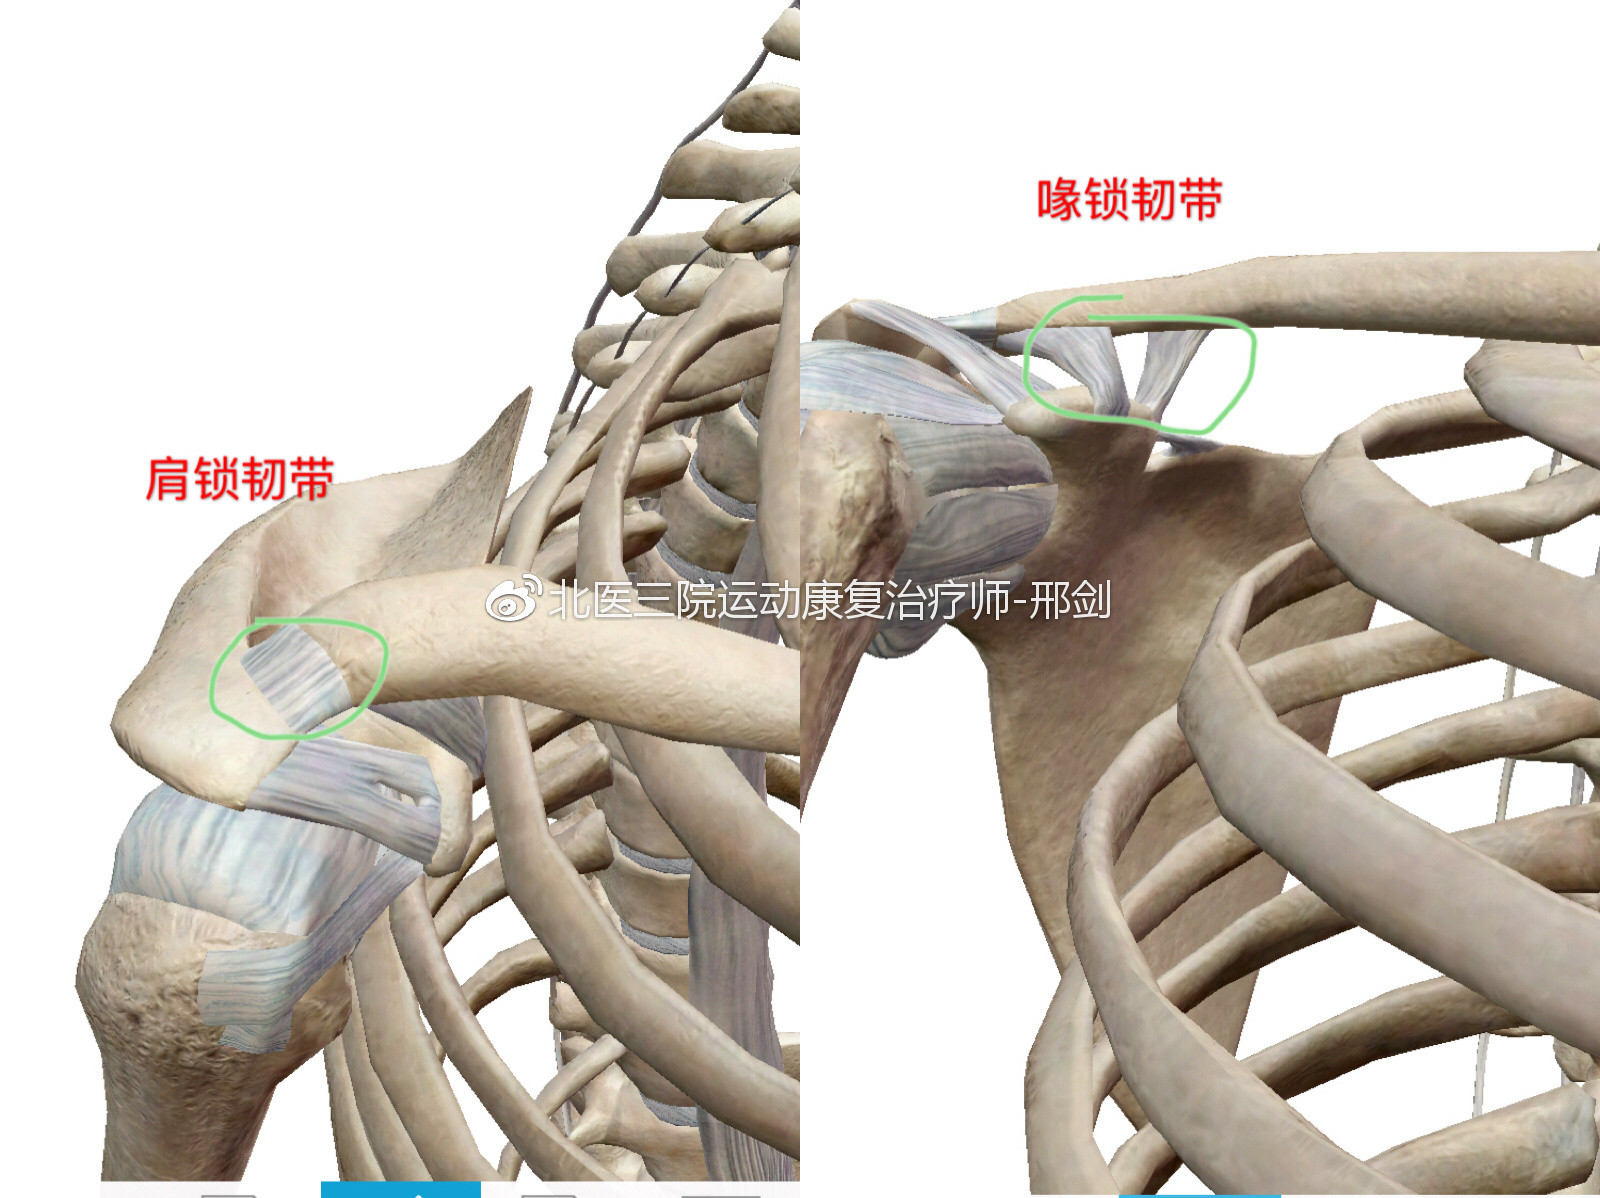 左锁骨肩峰端骨折图片,左锁骨肩峰端骨折 - 伤感说说吧